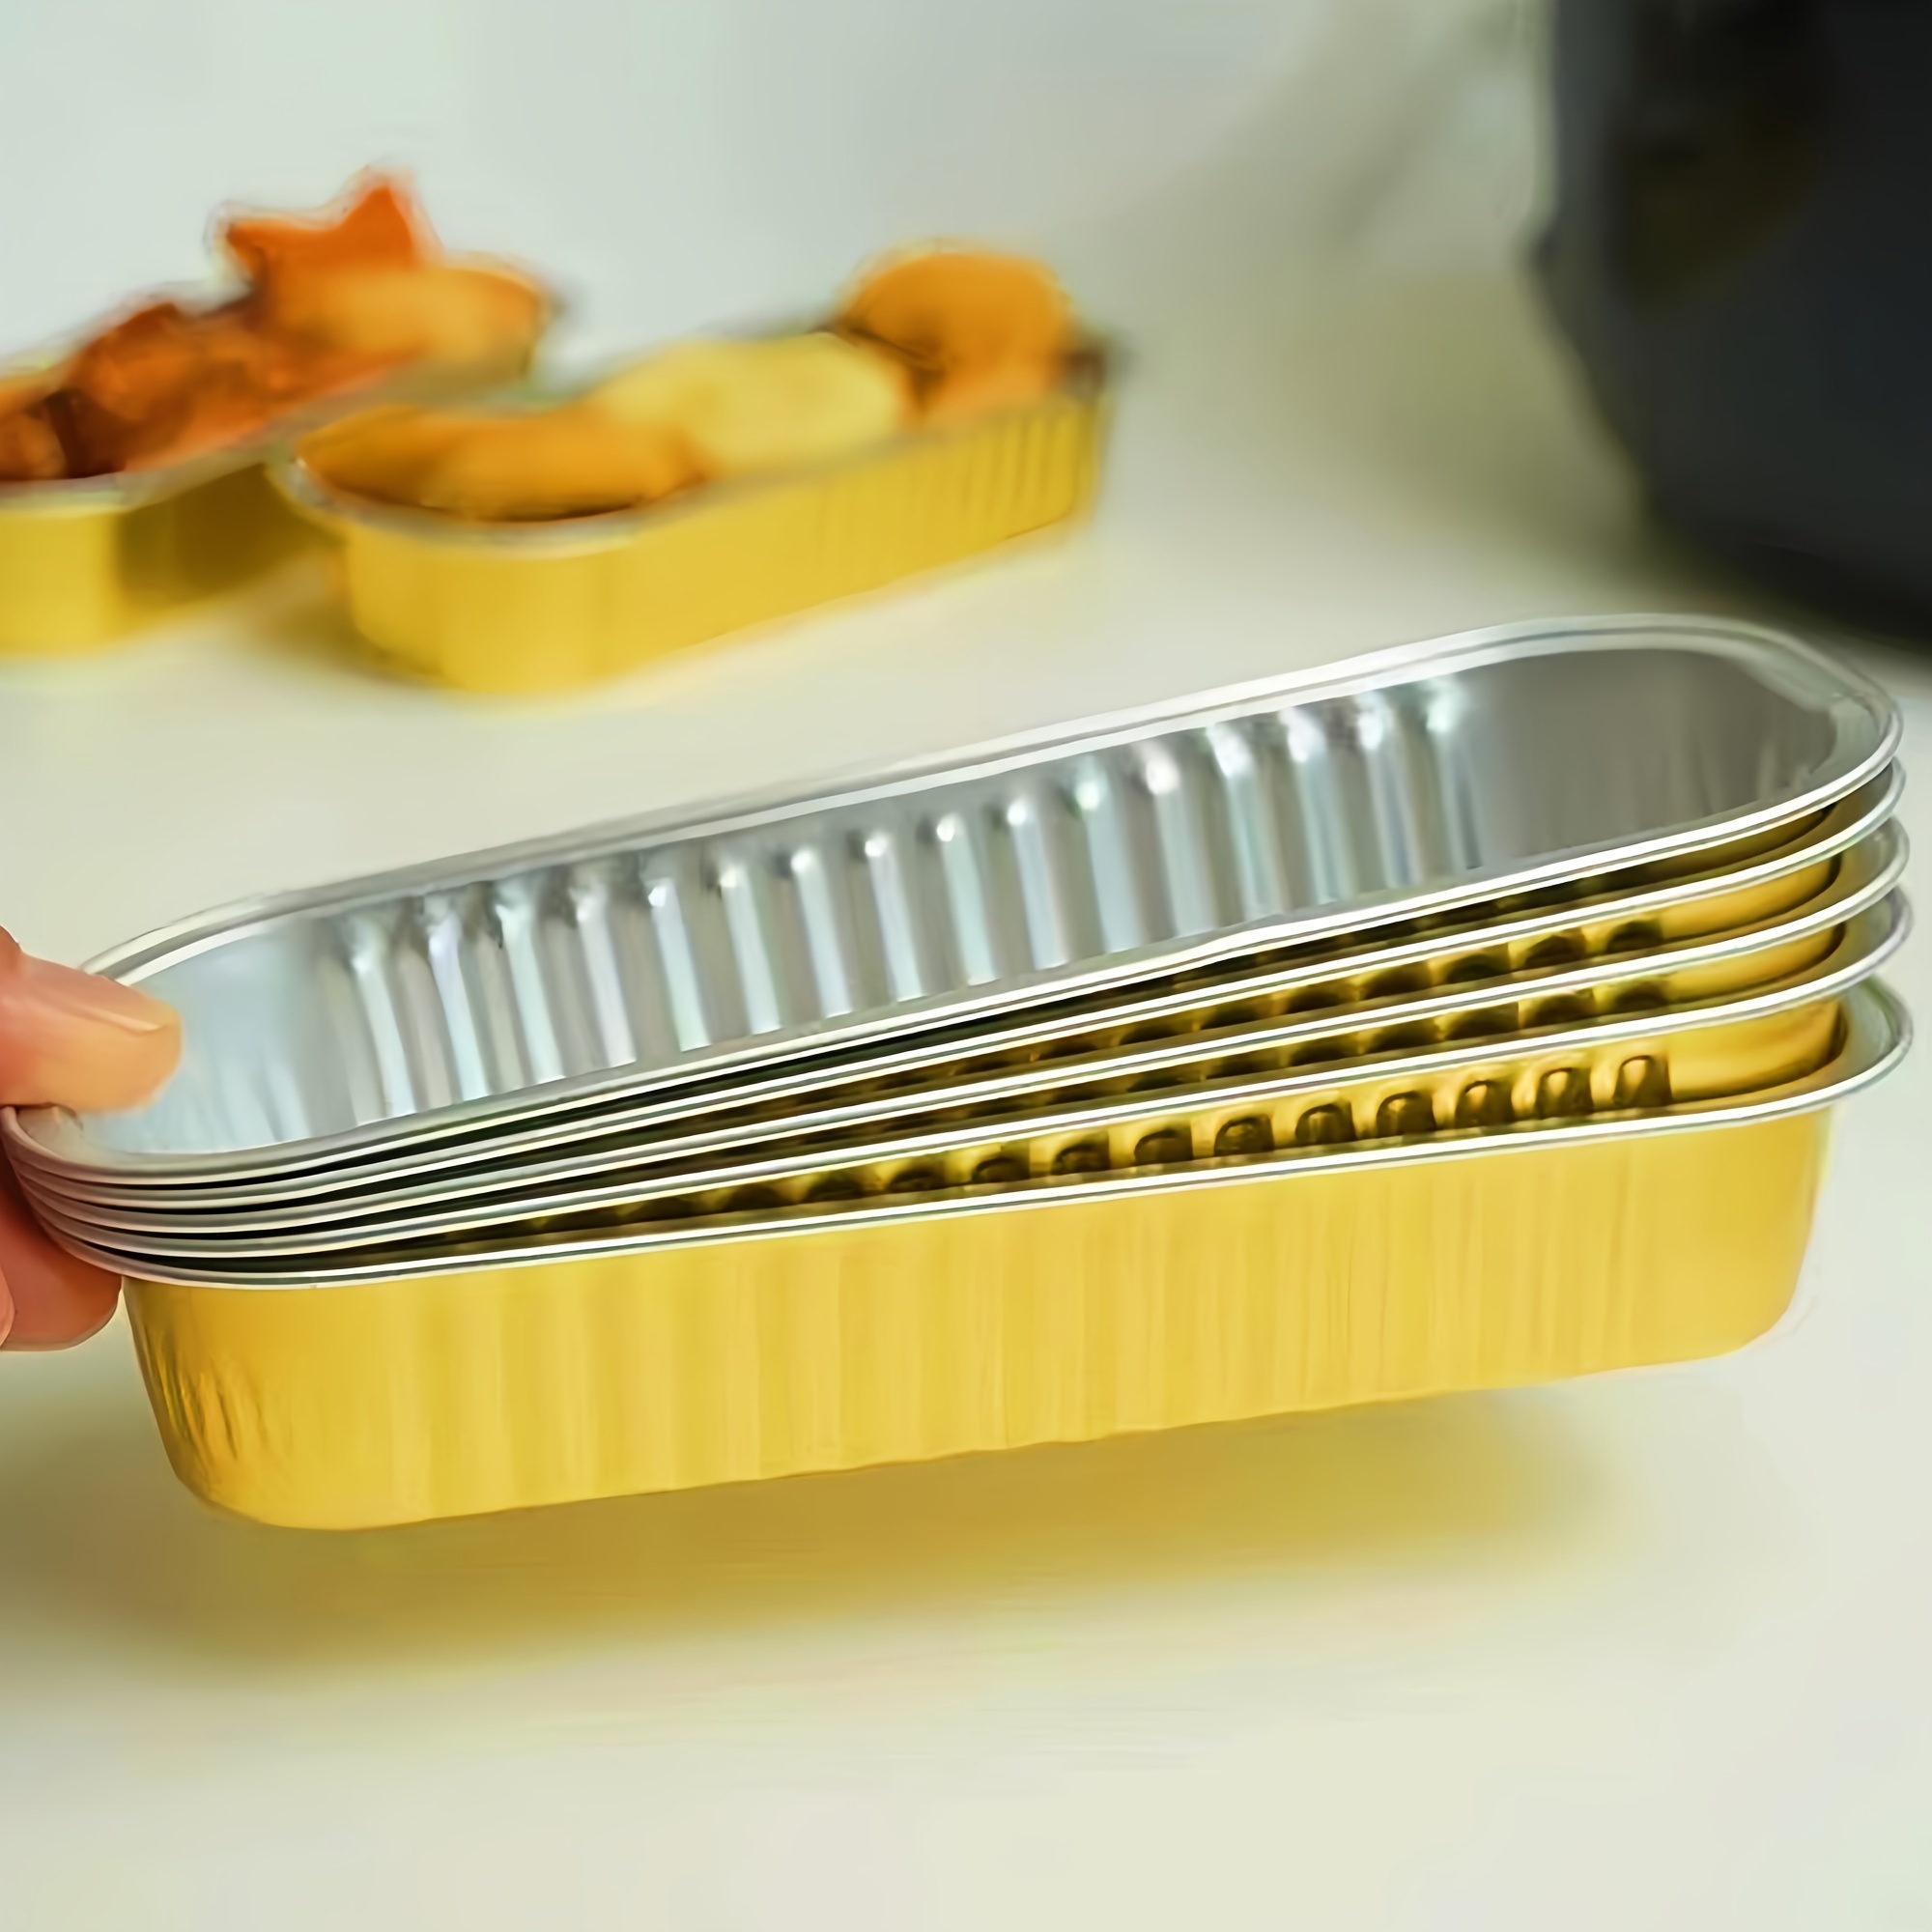 50/100Pcs 200ml Mini Loaf Pans Heat Resistant Aluminum Foil Baking Pans  Reusable Rectangle Foil Bread Container Cake Baking Pans